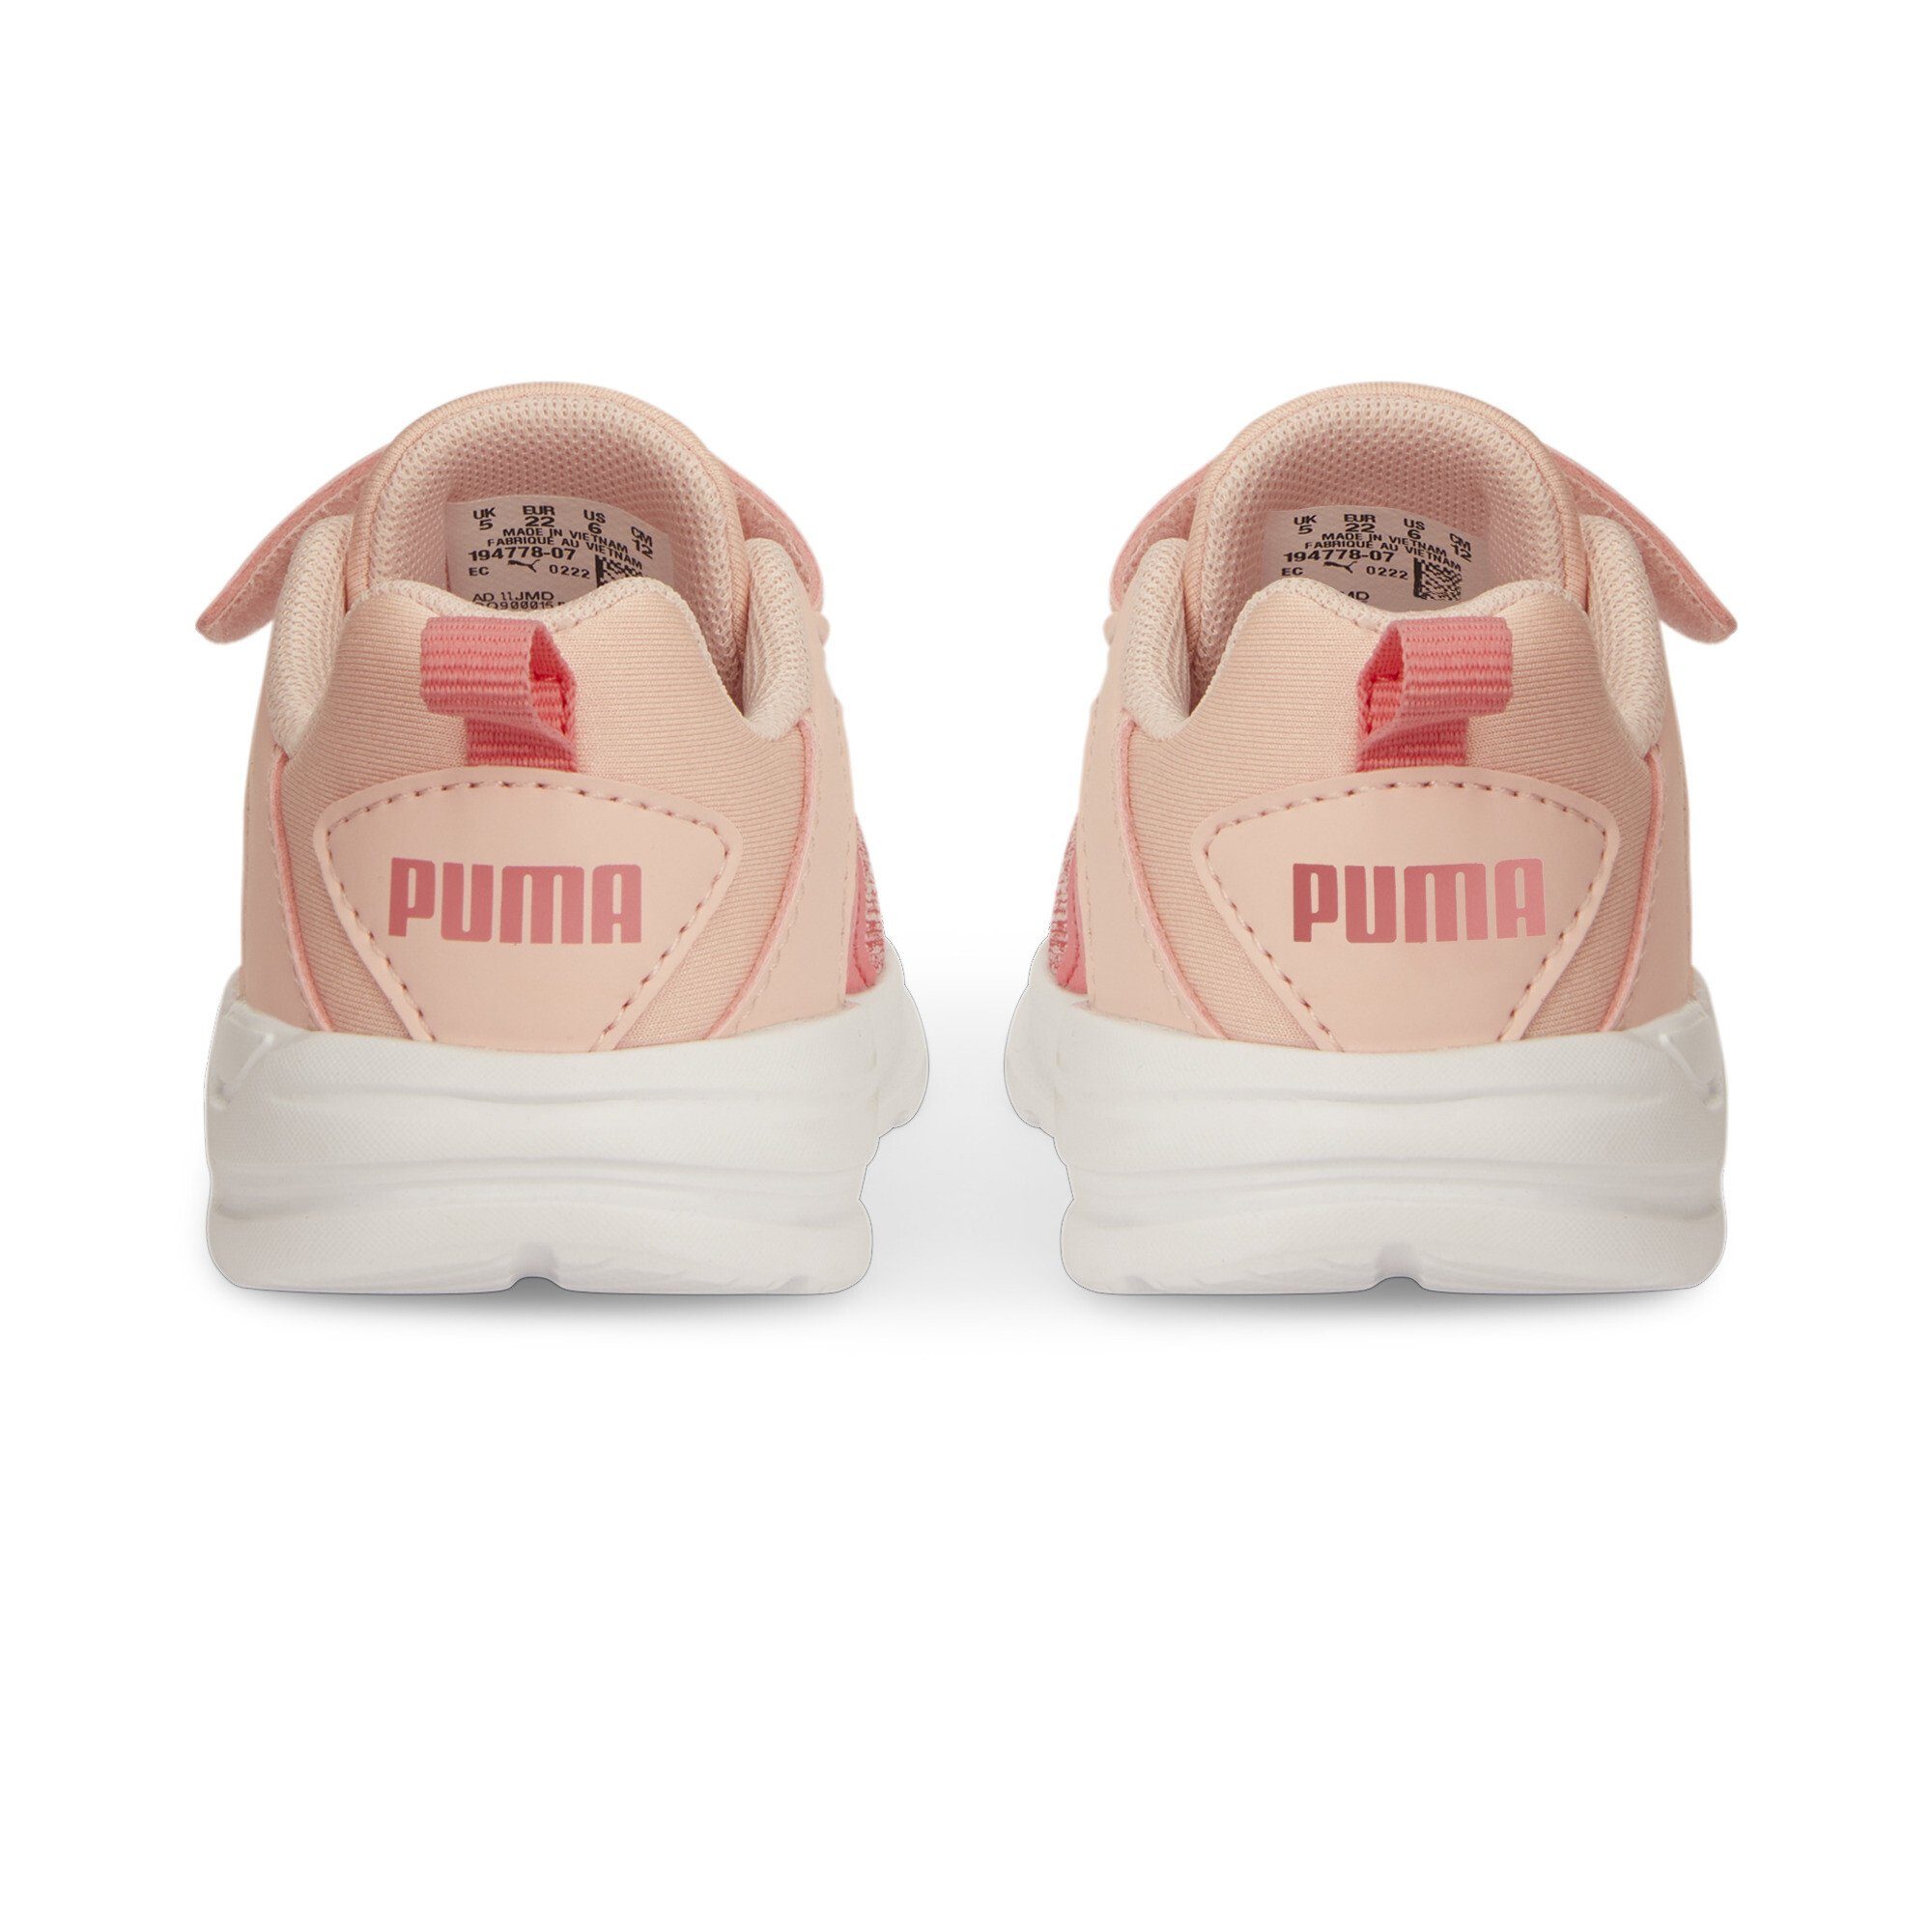 PUMA Comet 2 Alt Sneaker Kinder V Loveable Pink Dust Rose Laufschuh